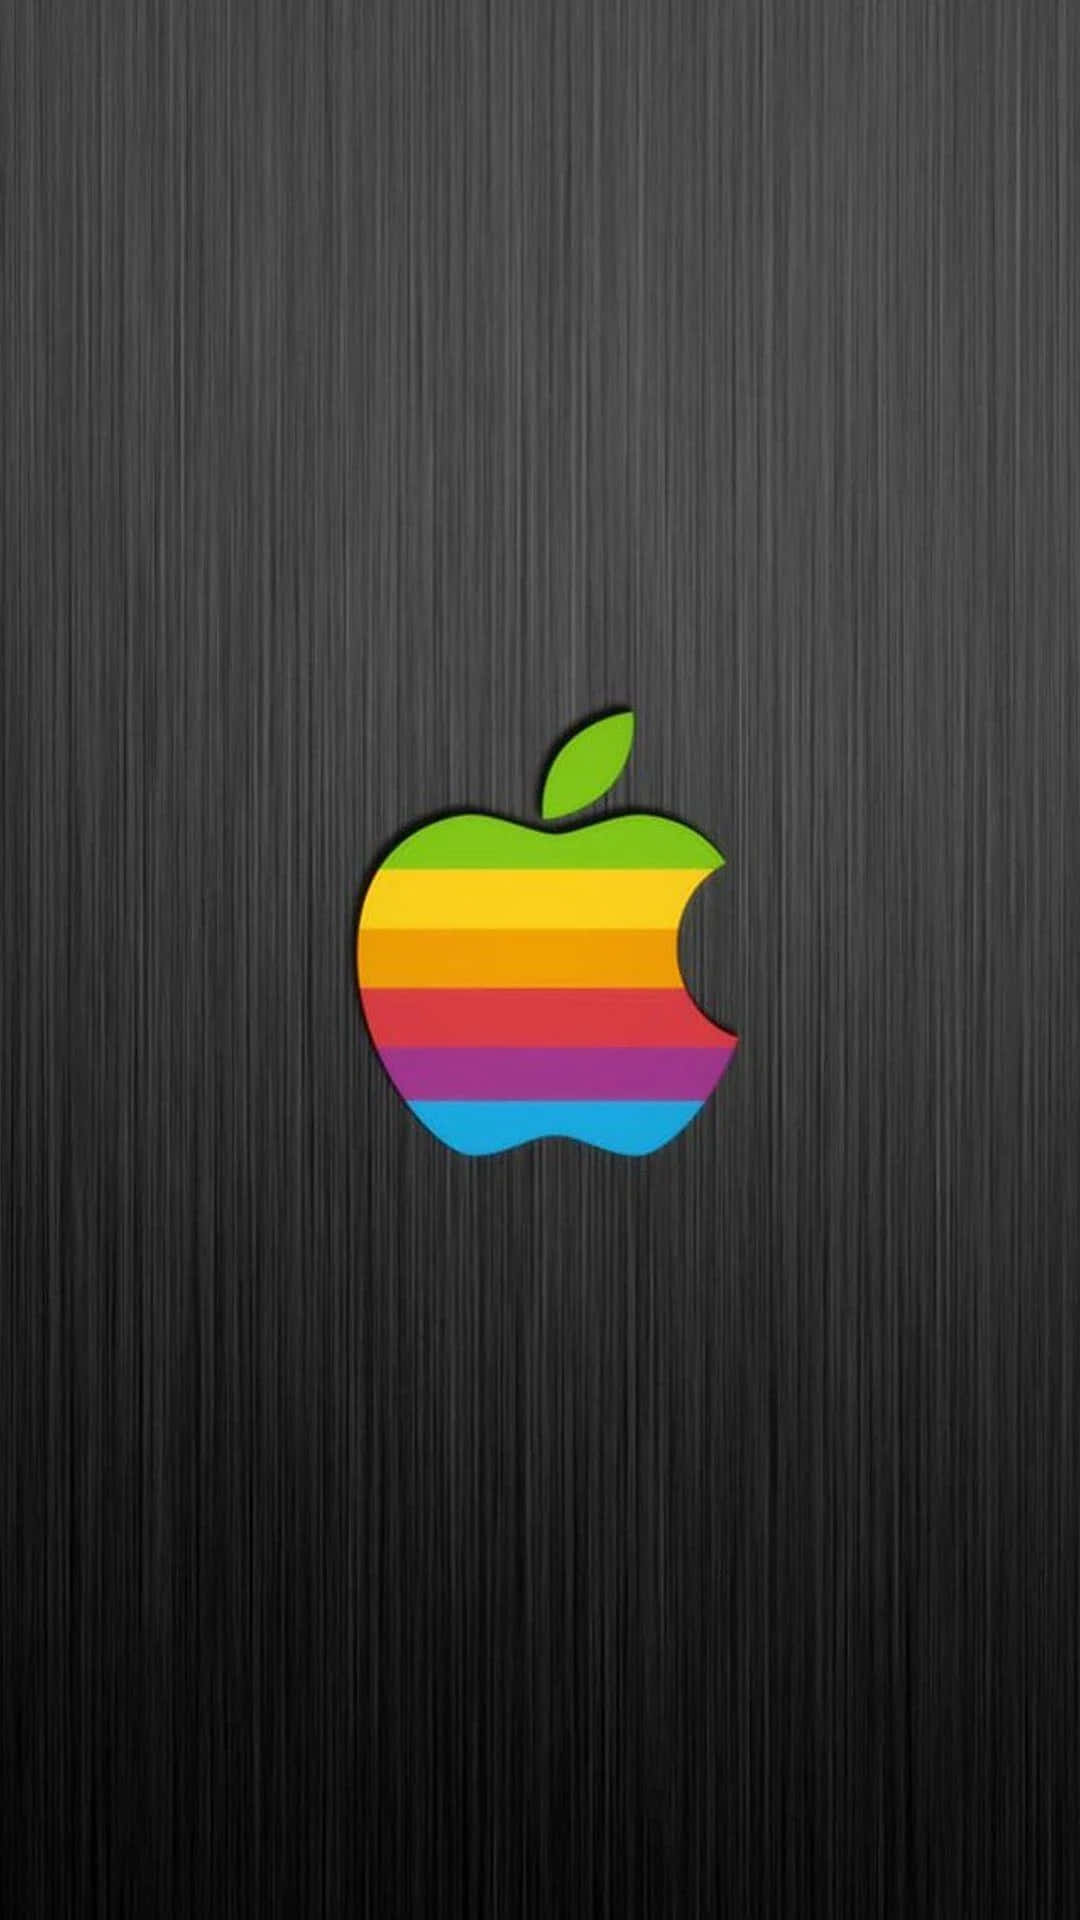 Gadgetapple Luminosi E Colorati Con Una Vetrina Di Frutti Apple.